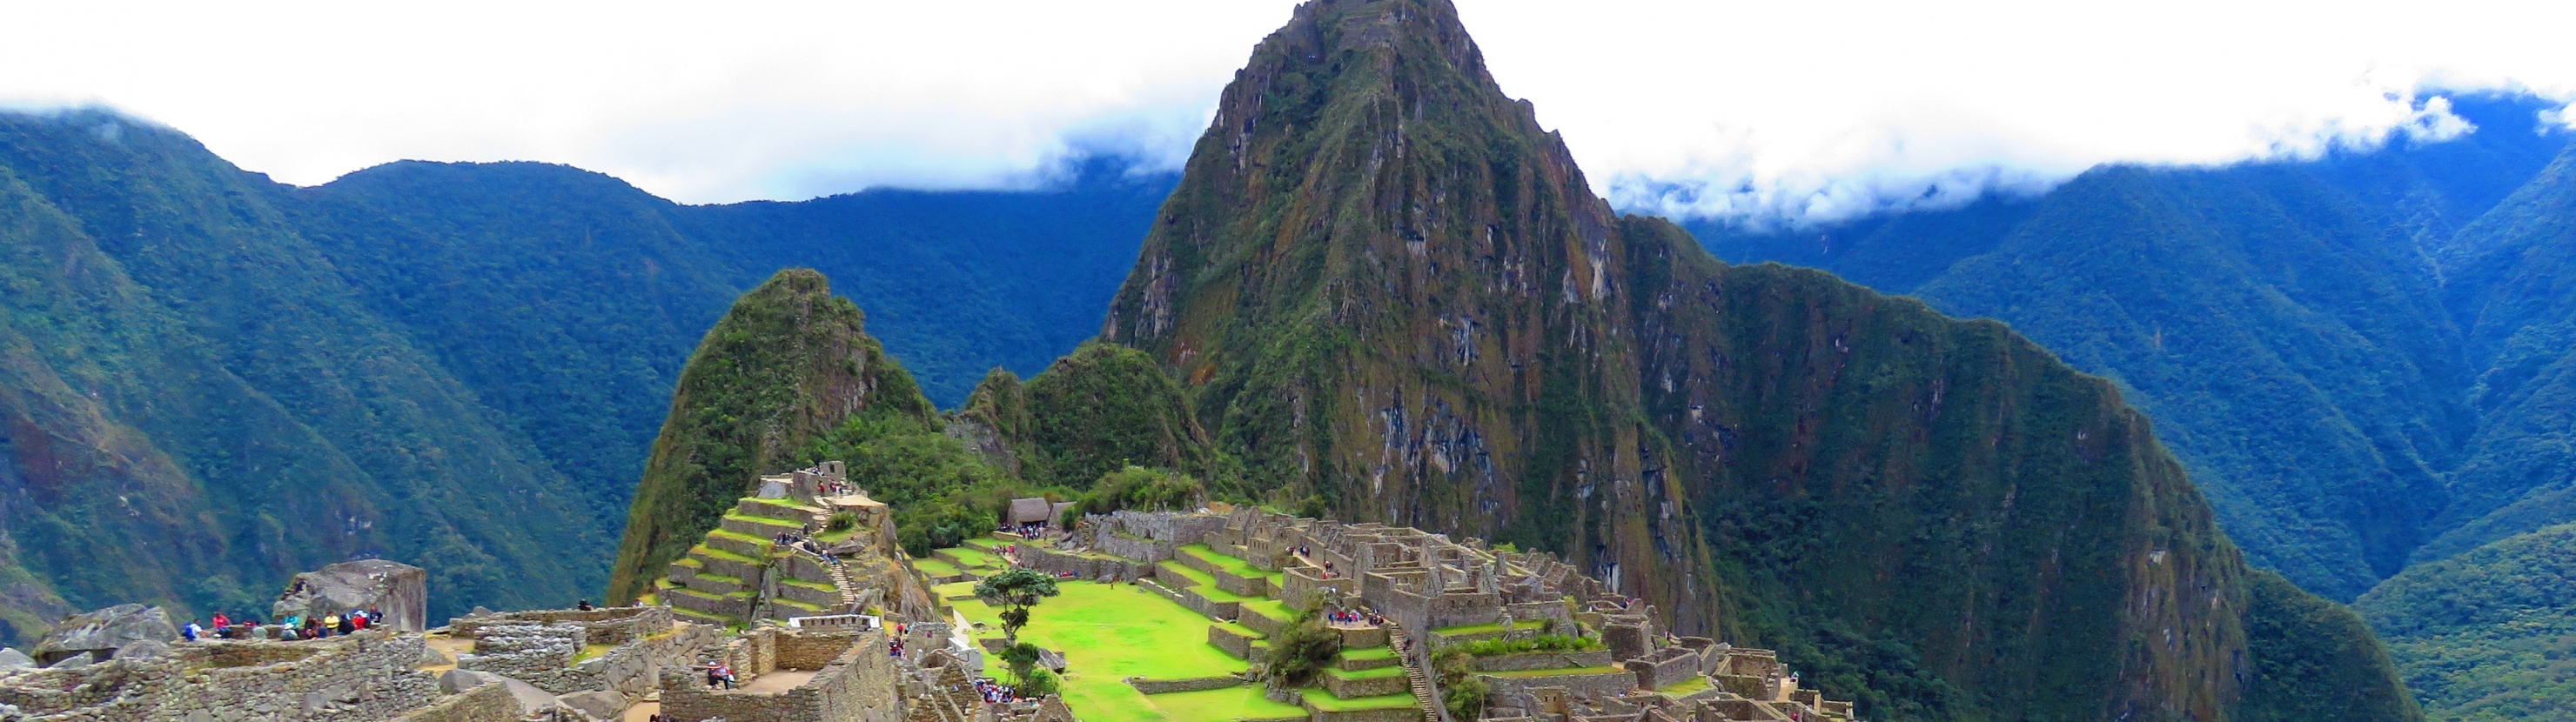 Peruu - inkade pärandus